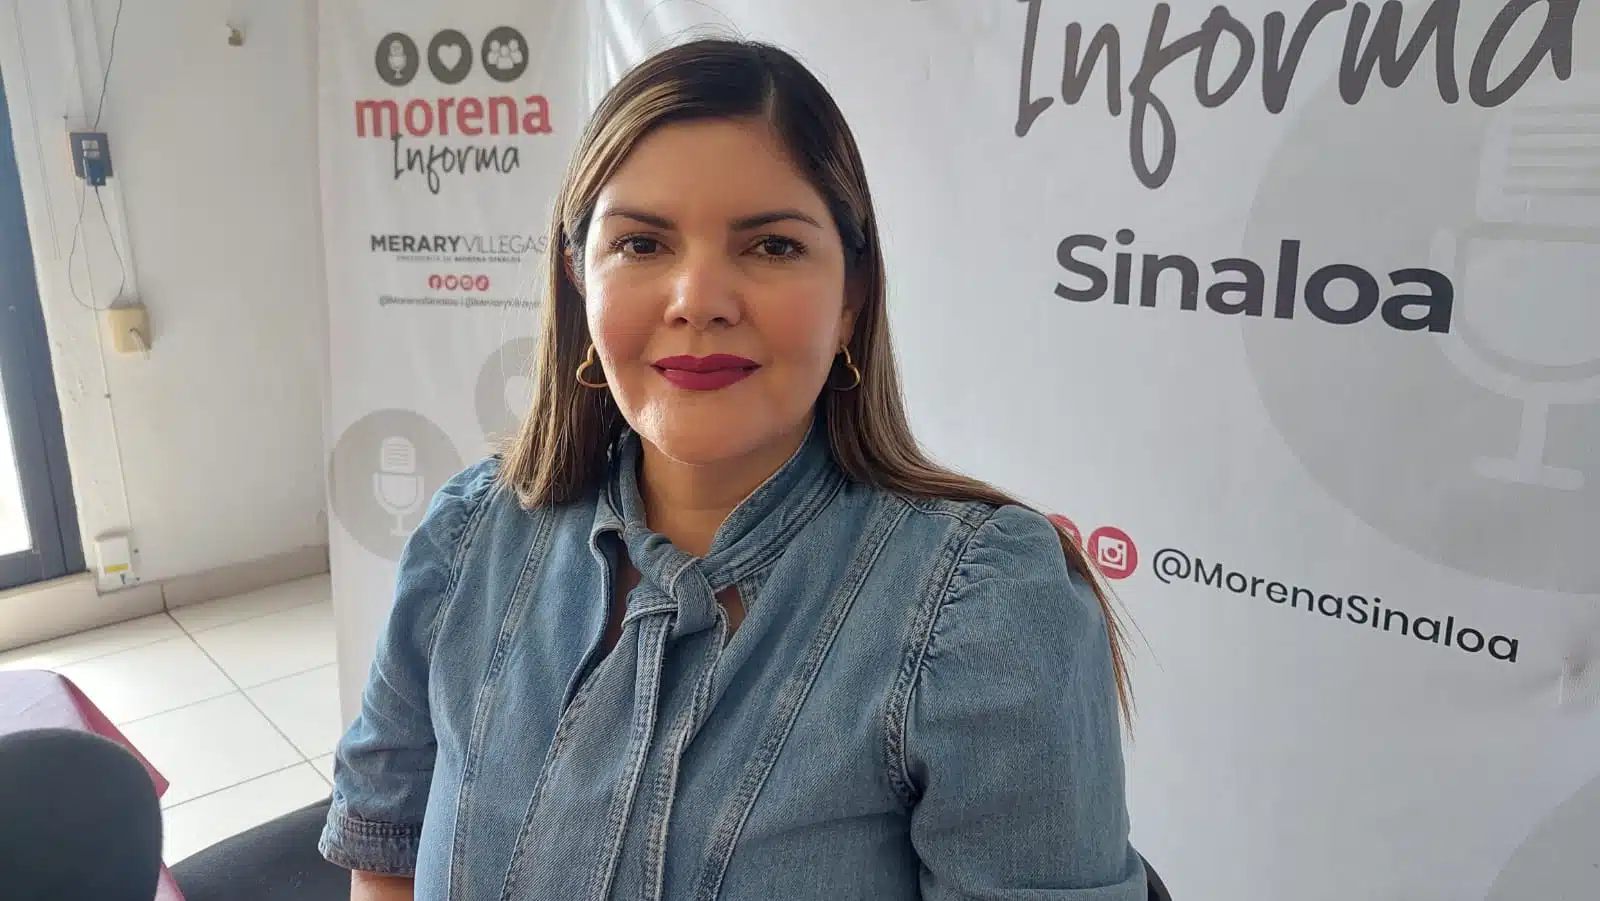 presidenta de Morena en Sinaloa, Merary Villegas Sánchez